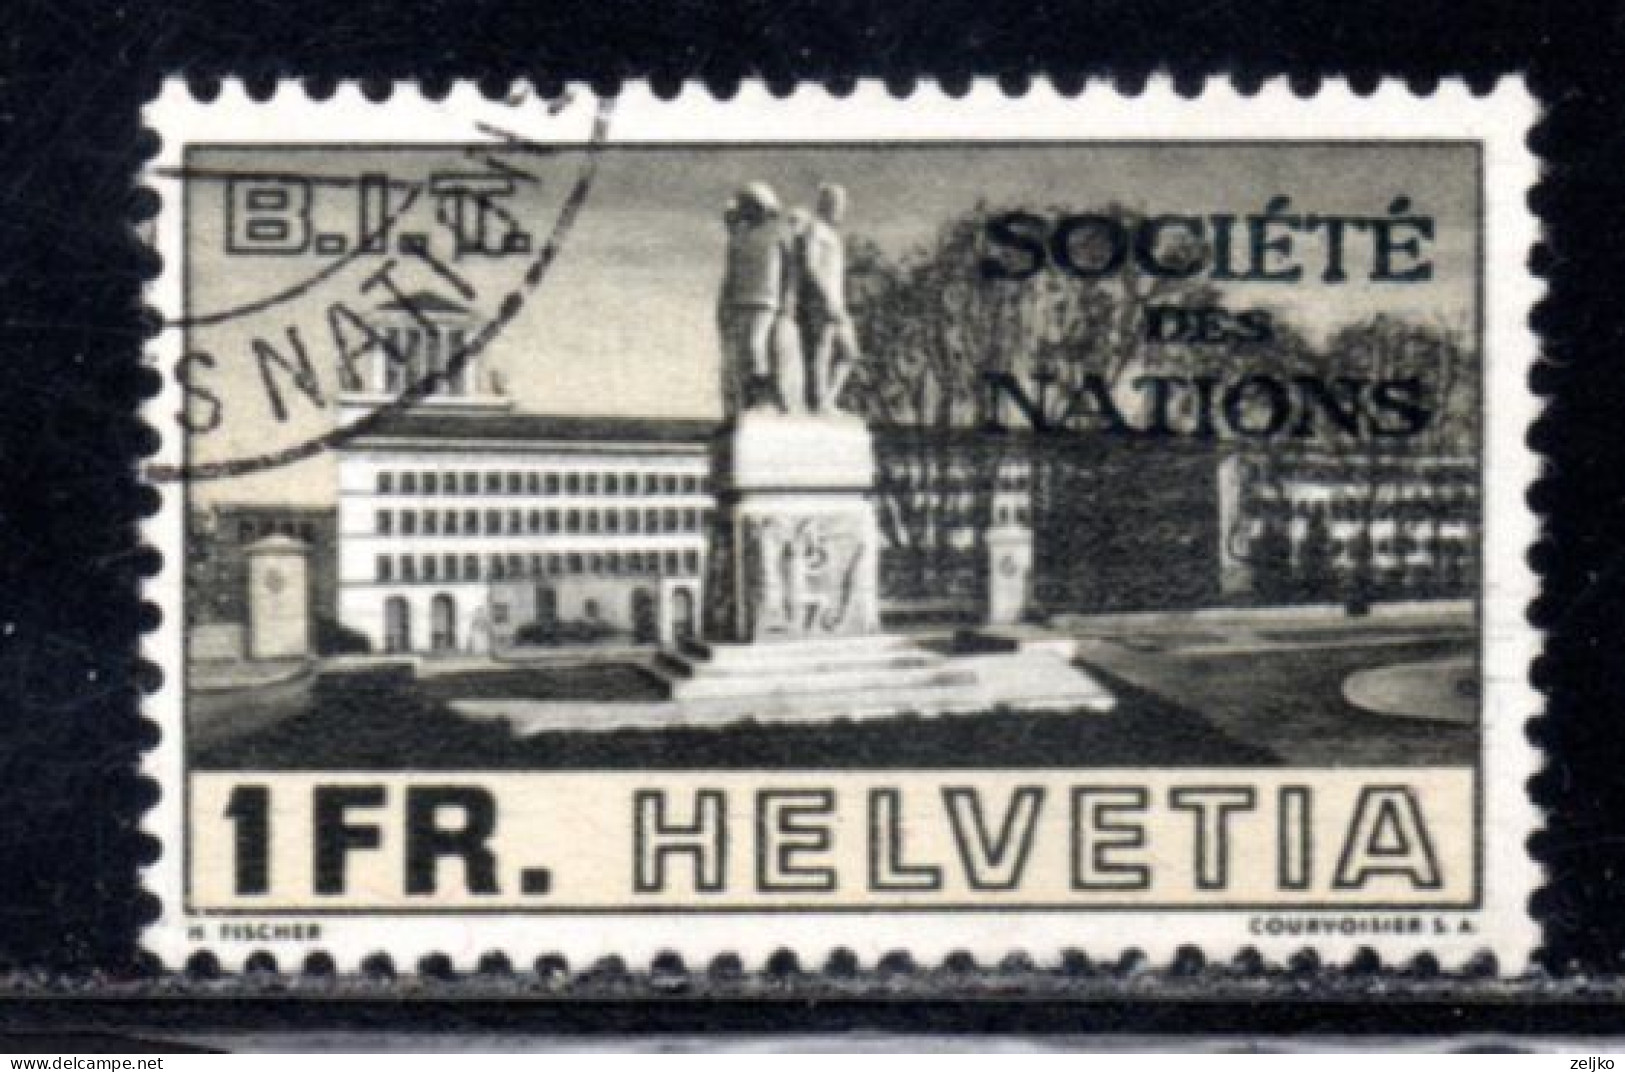 Switzerland, SDN, UN, Used, 1938, Michel 60 - UNO